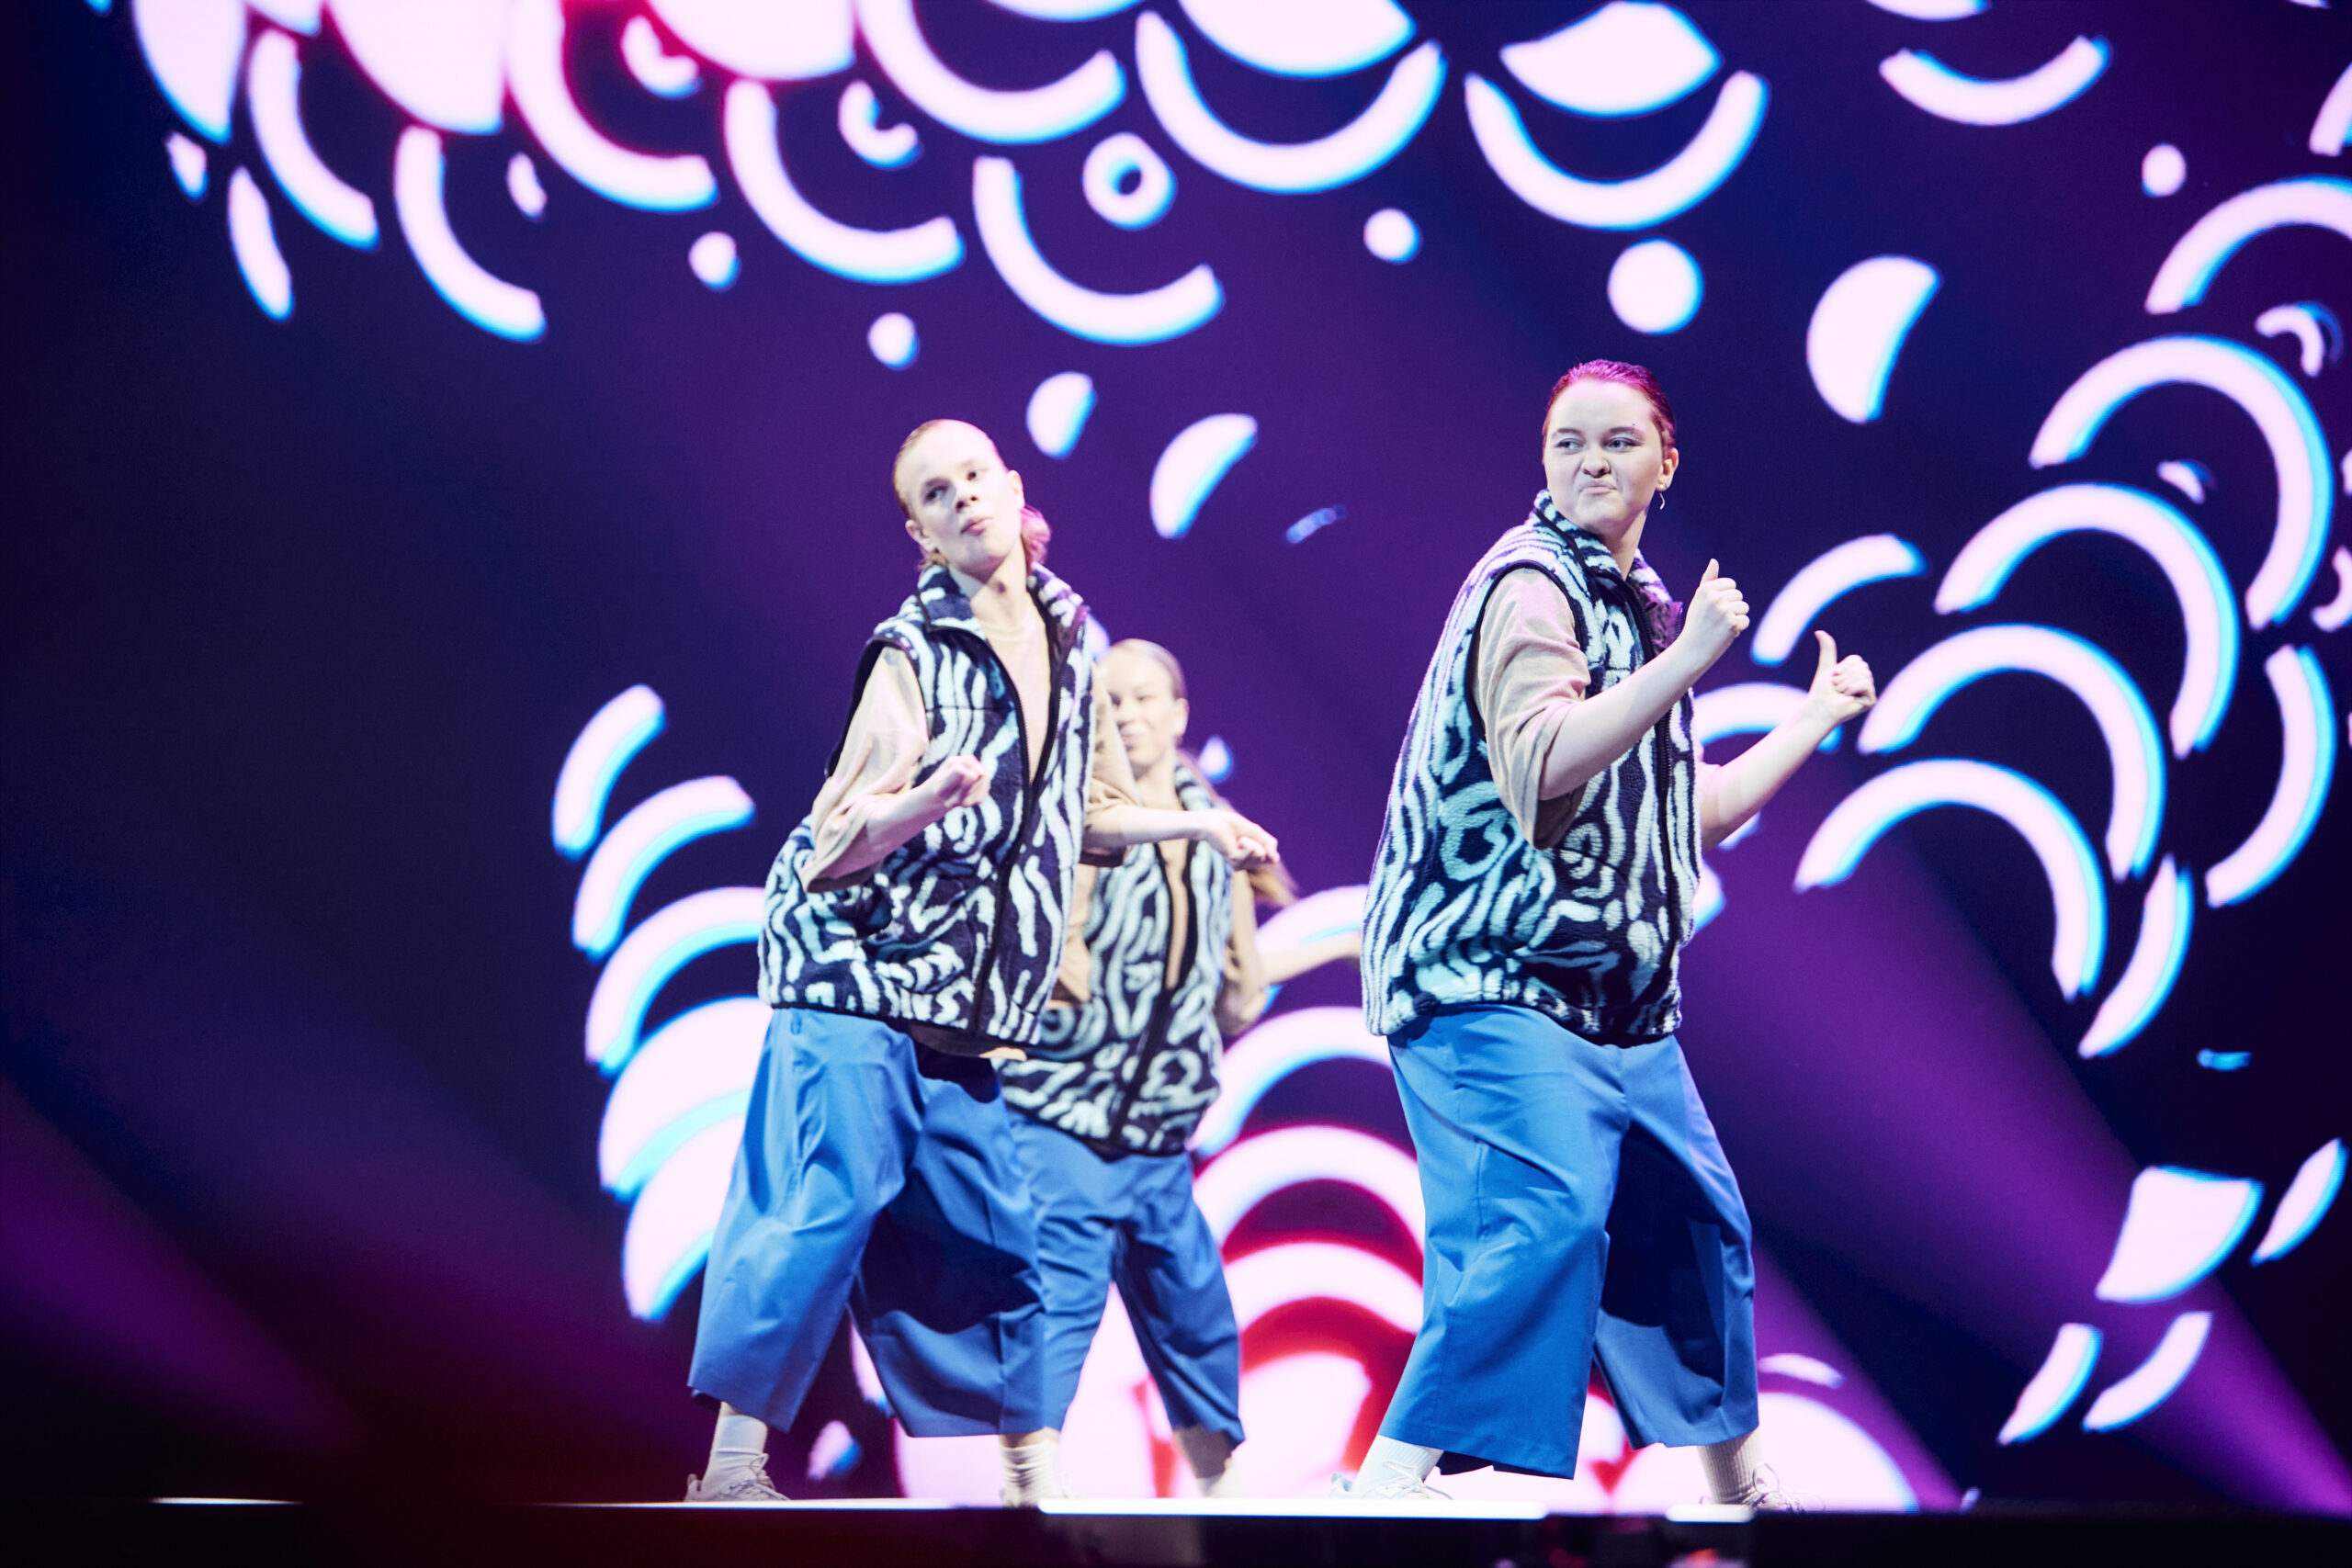 UMK preshowssa esiintyvät Moves like summeri -tanssihaasteet voittaneet tanssijat. Heillä on päällään siniset housut ja kirjavat paidat.